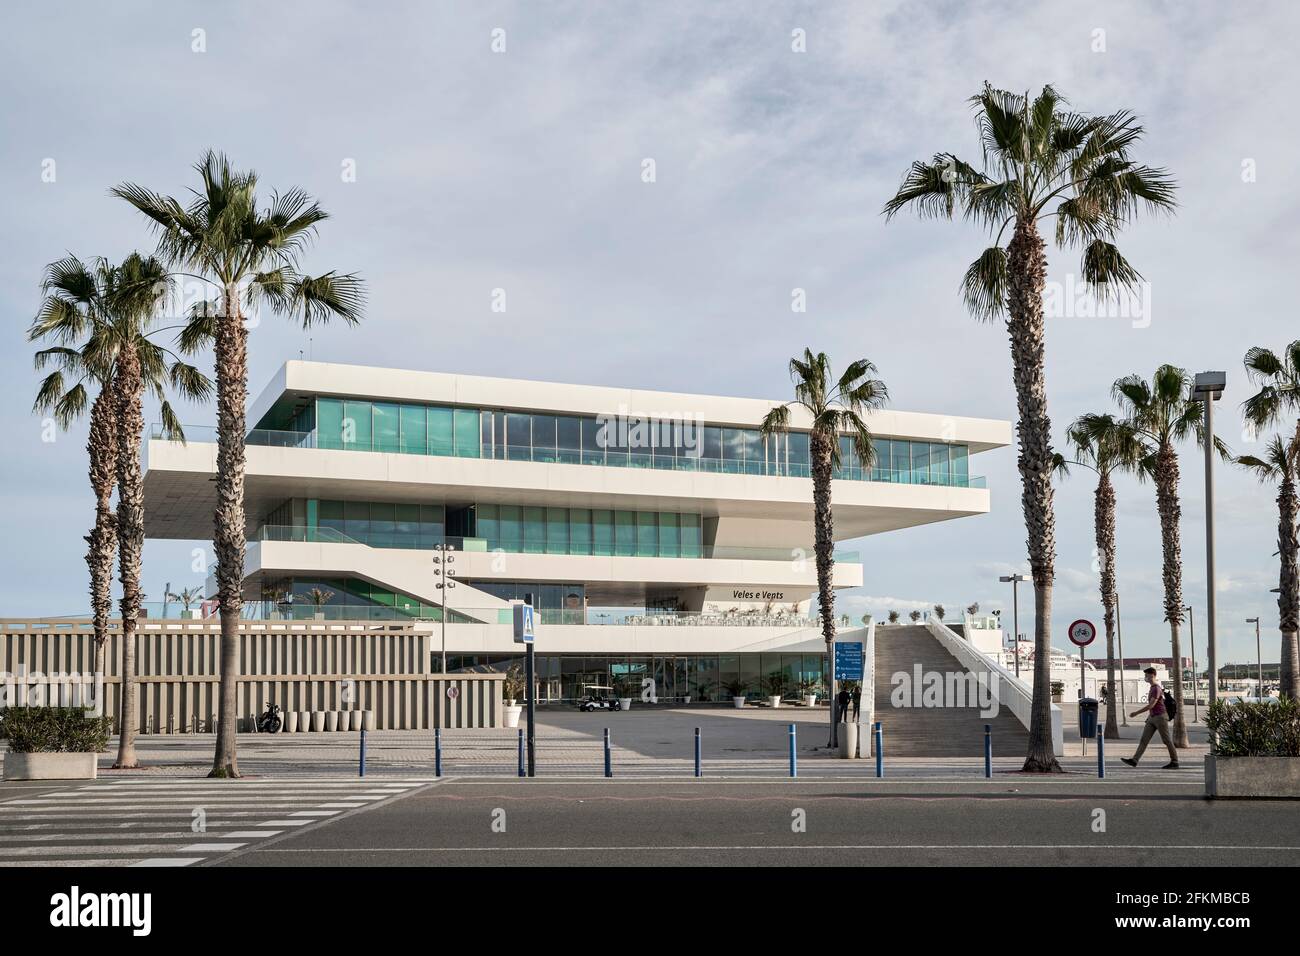 Pabellón de la Copa América Veles e Vents o Velas Vientos en el puerto de Valencia diseñado por David Chipperfield arquitecto. Lugar emblemático de las celebraciones Foto de stock